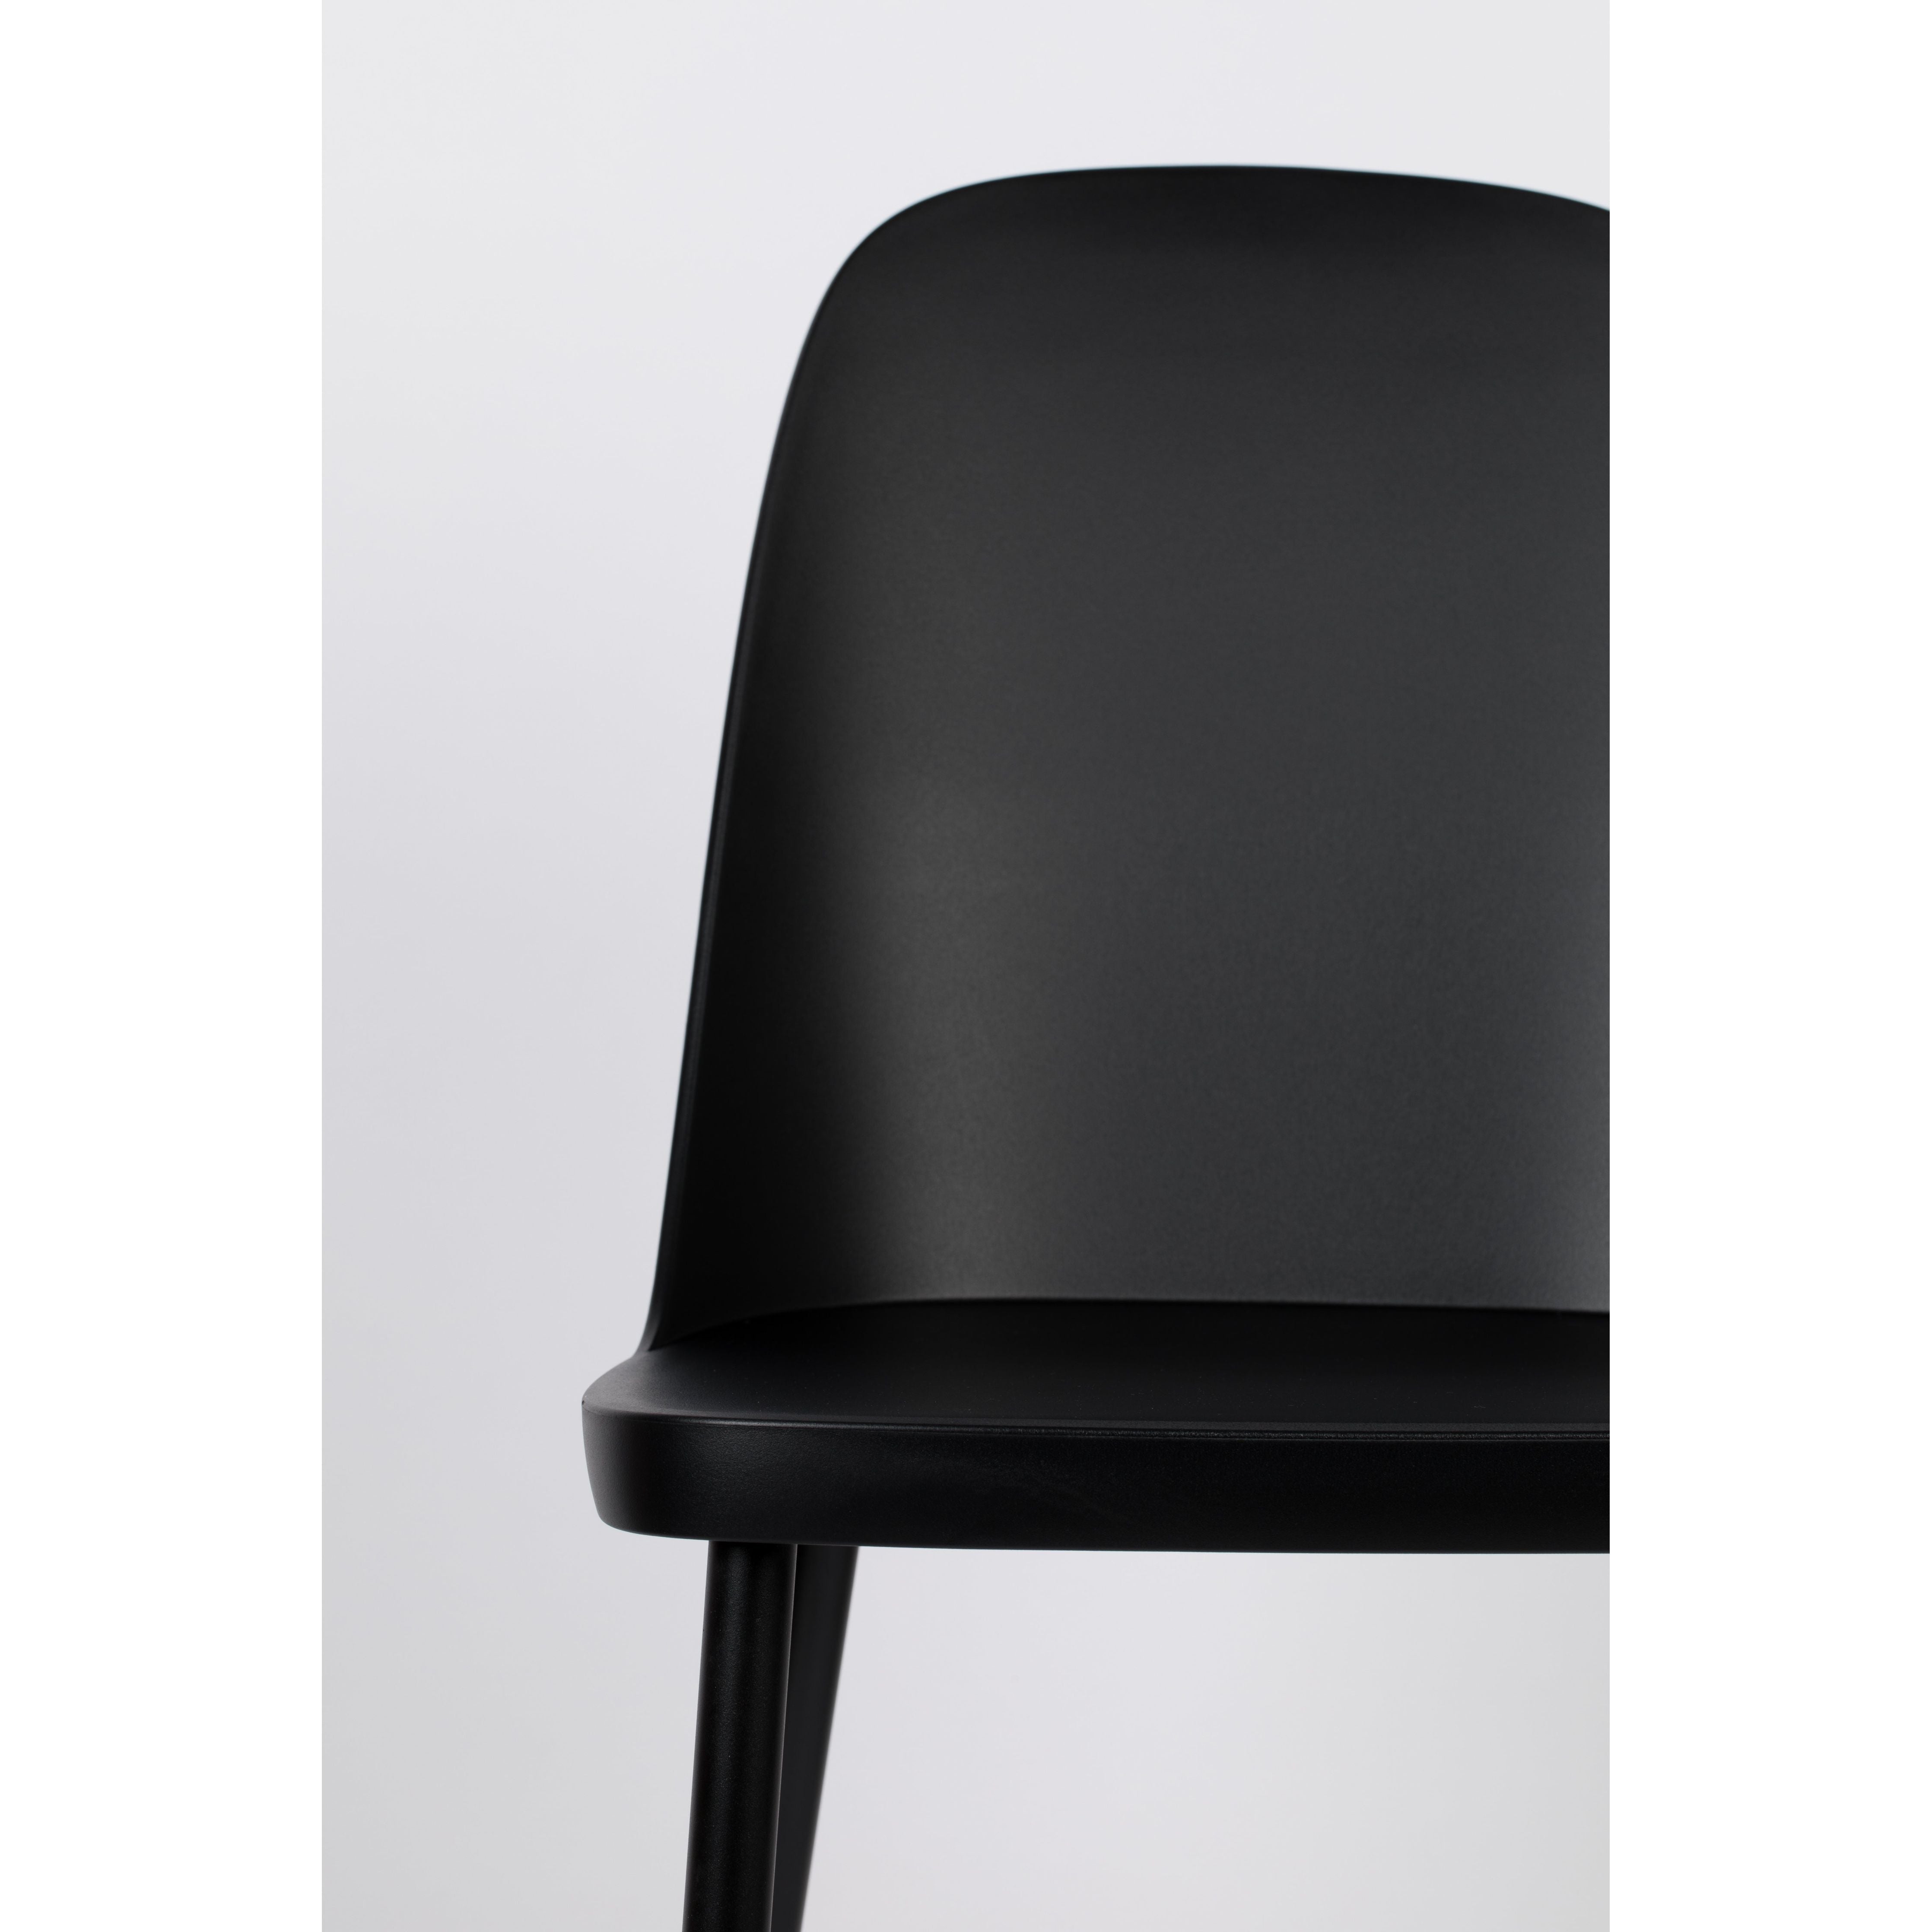 Chair pip all black